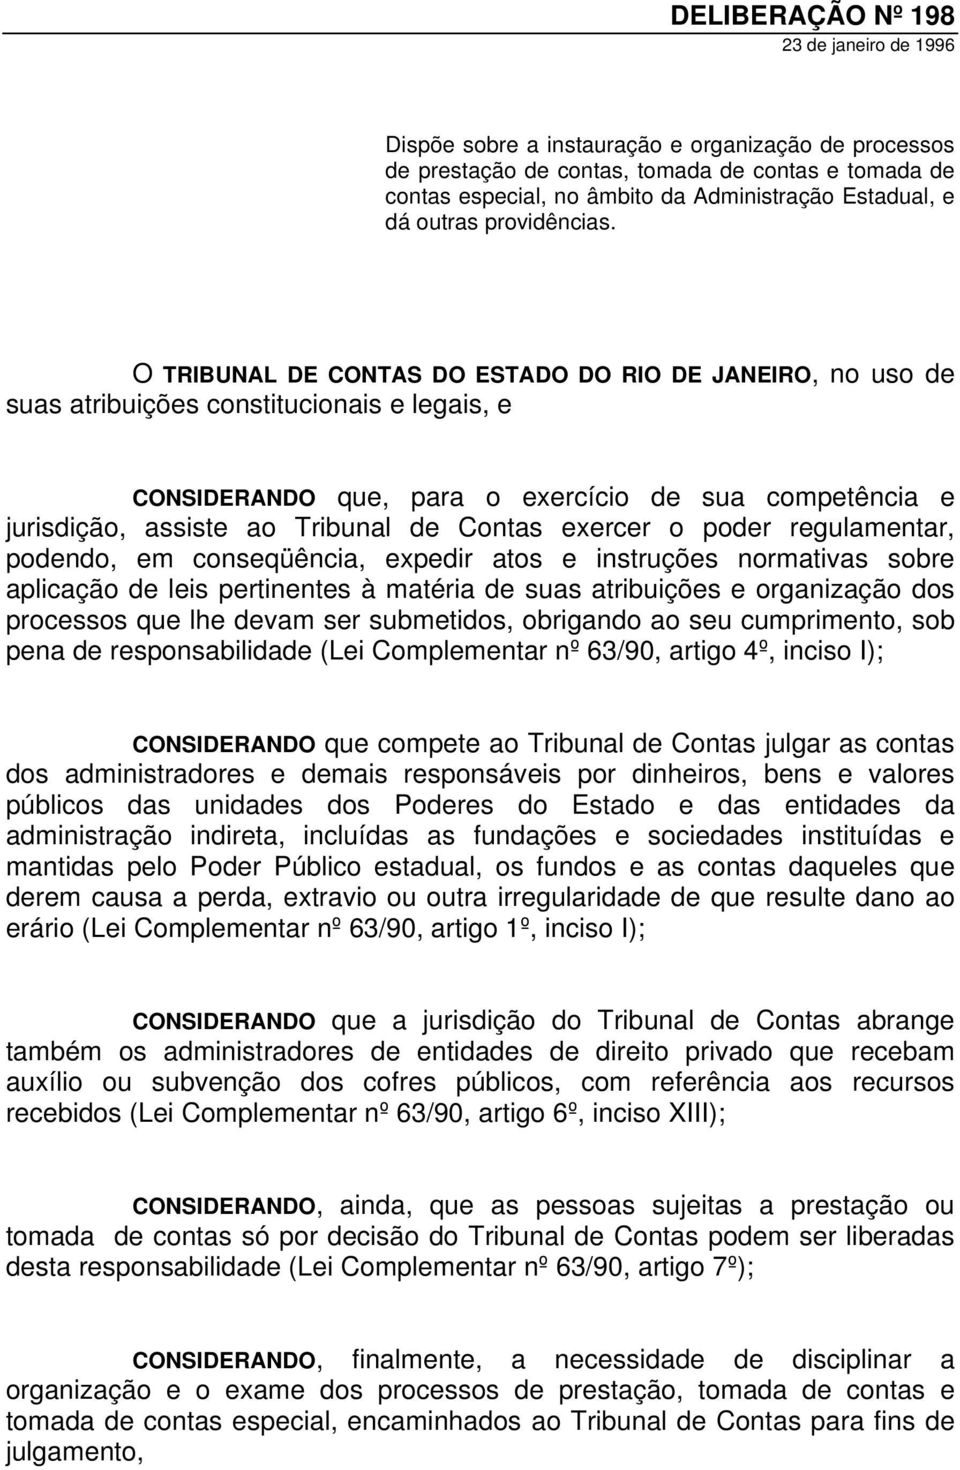 O TRIBUNAL DE CONTAS DO ESTADO DO RIO DE JANEIRO, no uso de suas atribuições constitucionais e legais, e CONSIDERANDO que, para o exercício de sua competência e jurisdição, assiste ao Tribunal de